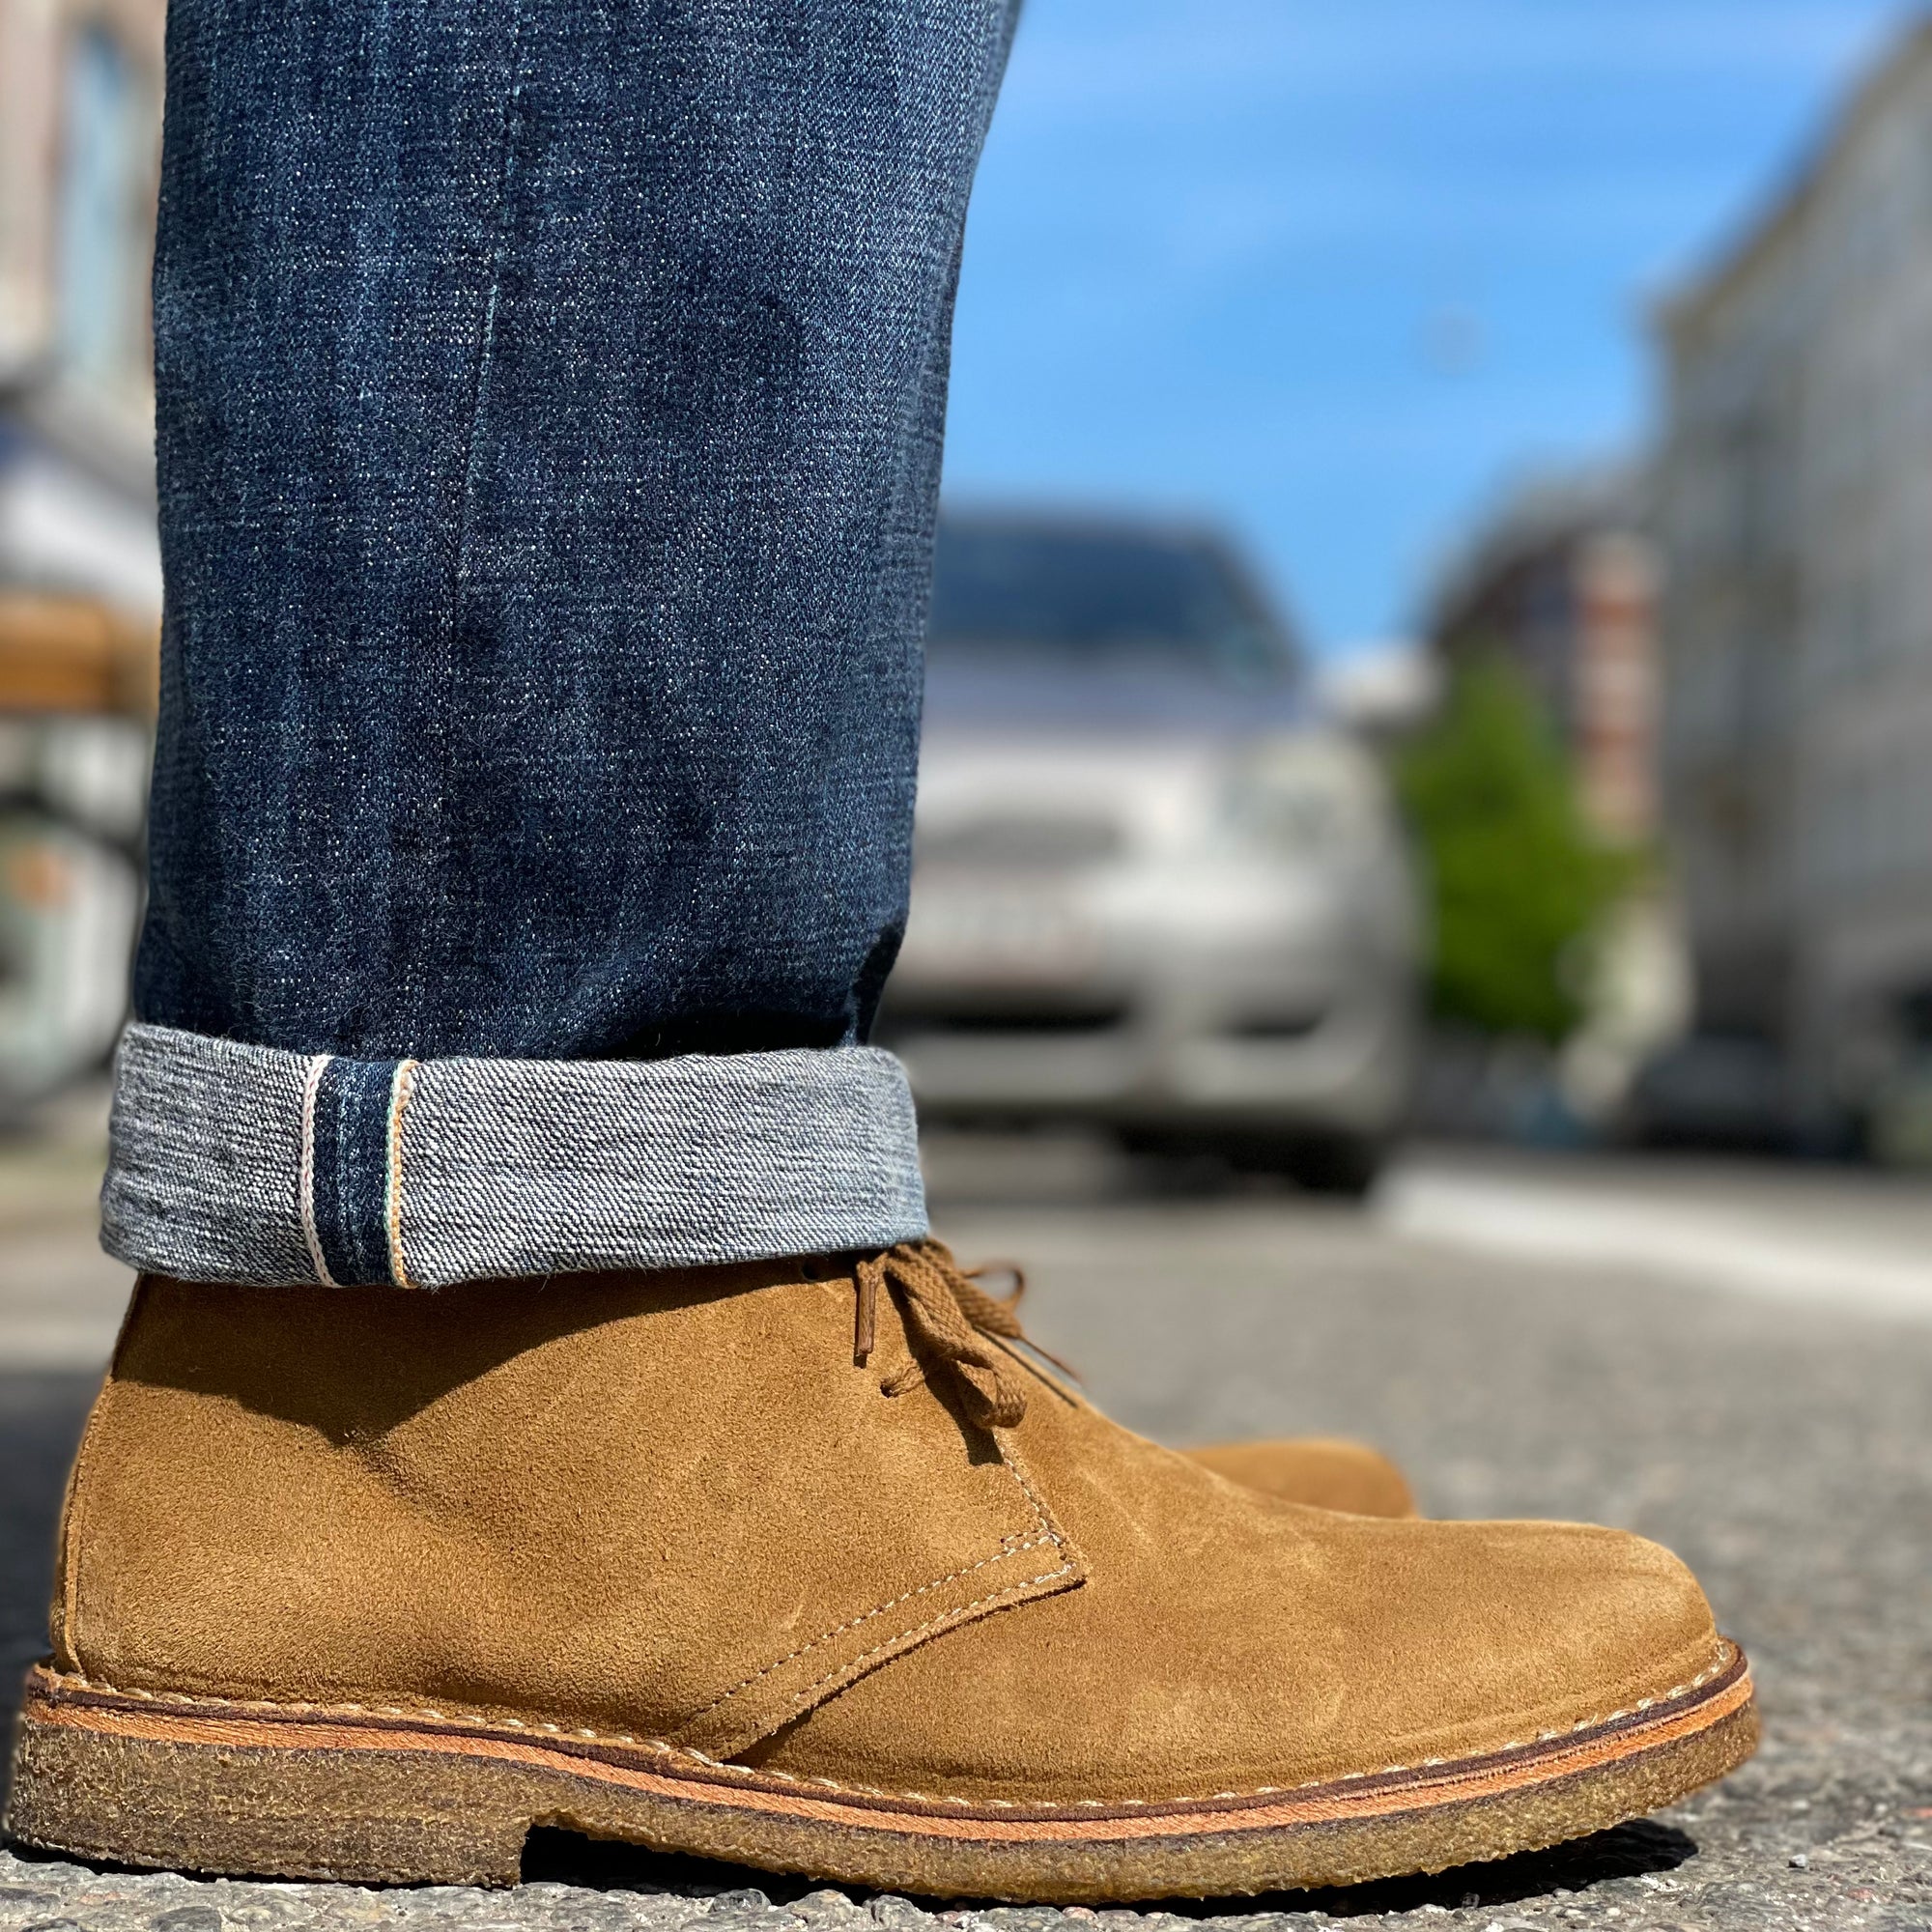 Brund - Jeans & Boots